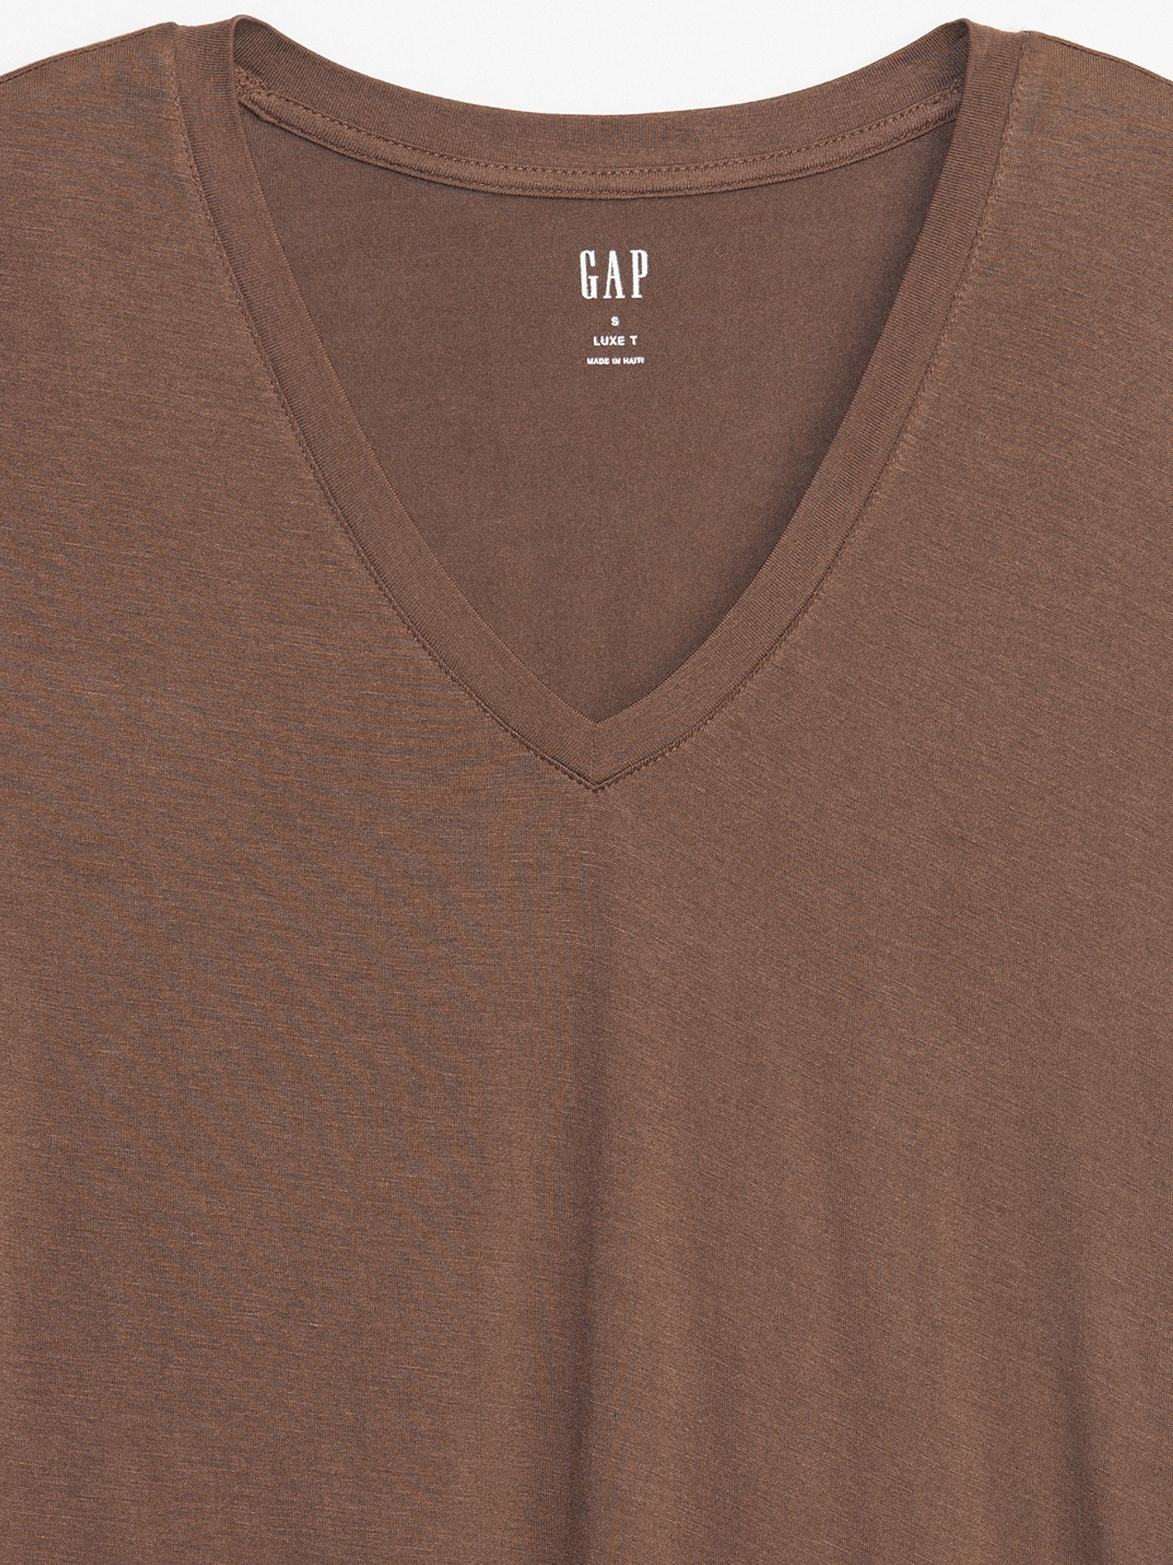 Gap Factory Women's Luxe Crewneck T-Shirt